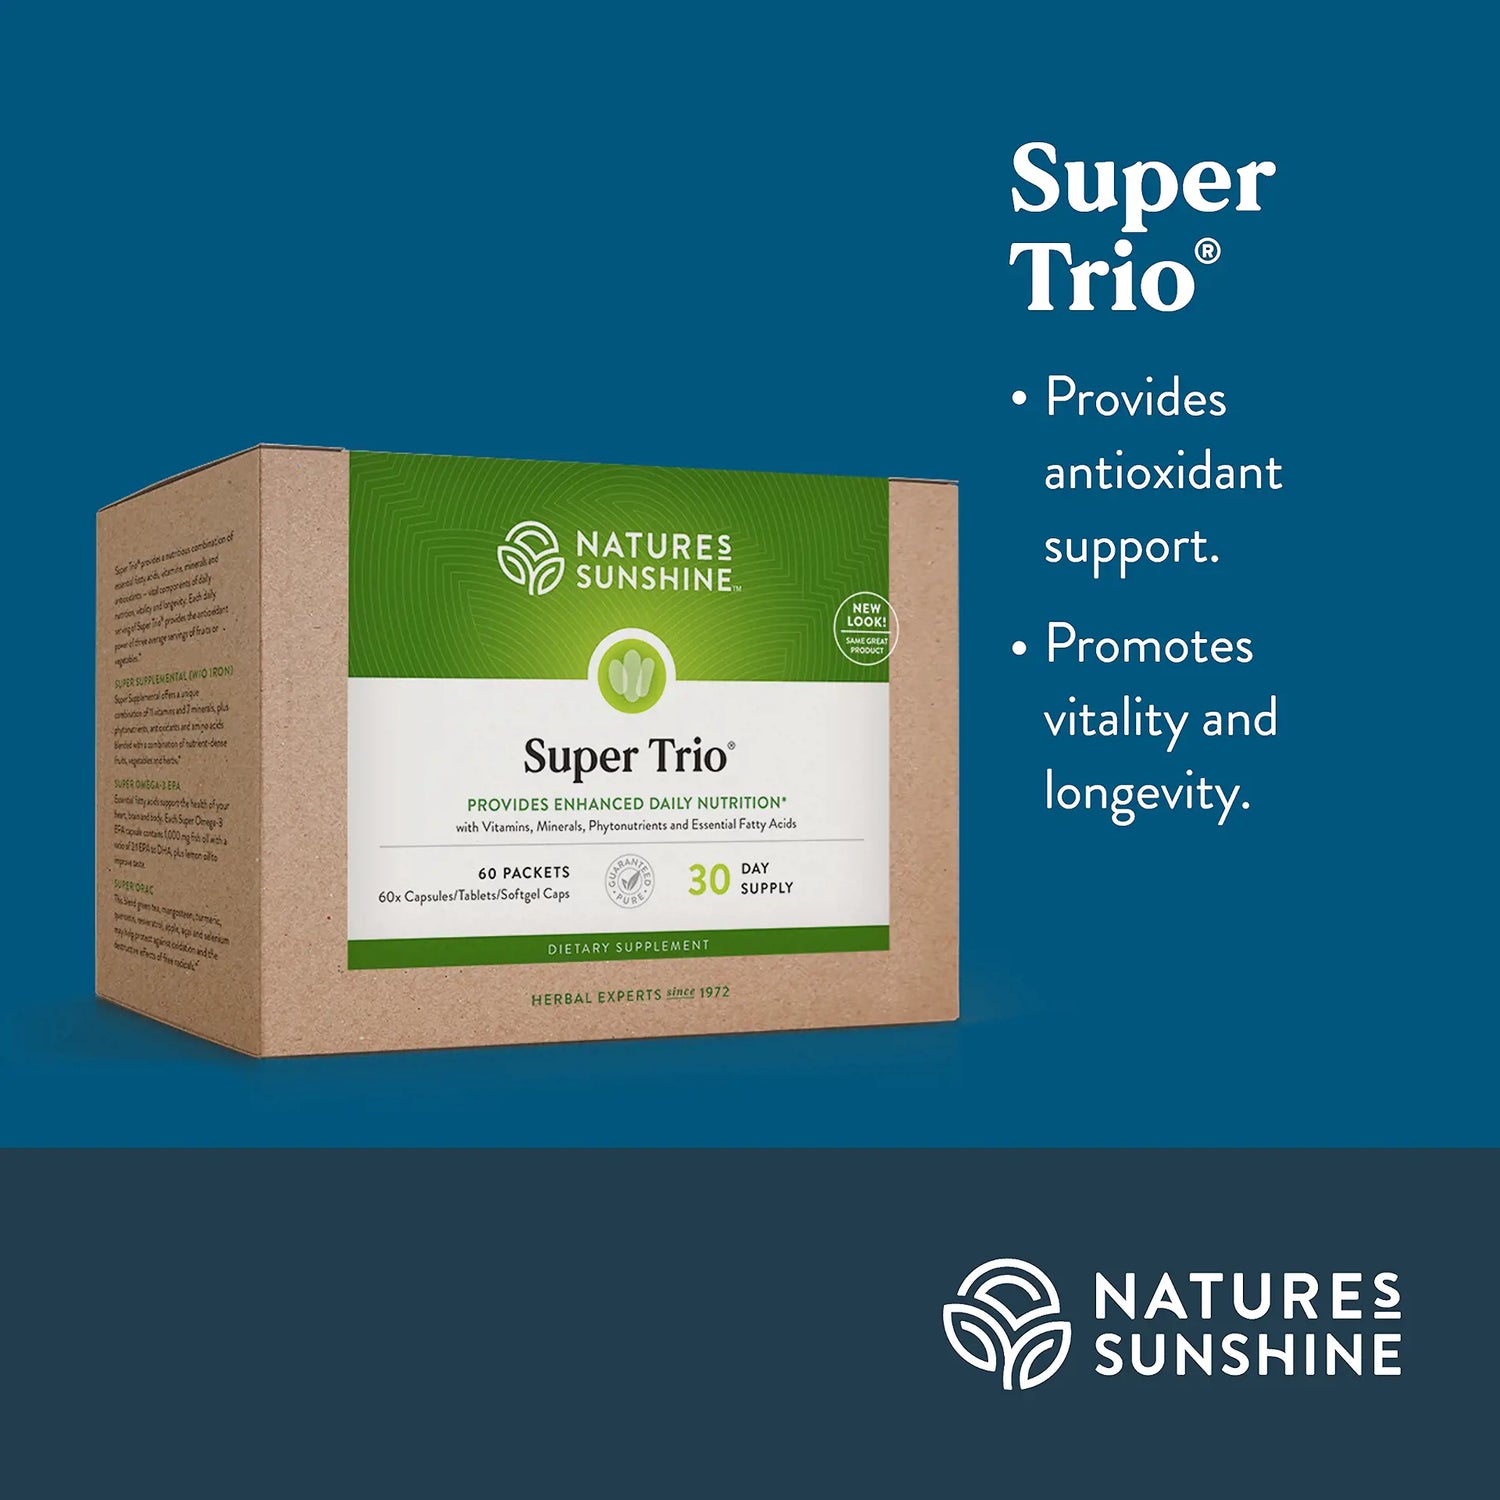 Super Trio® 30 day program